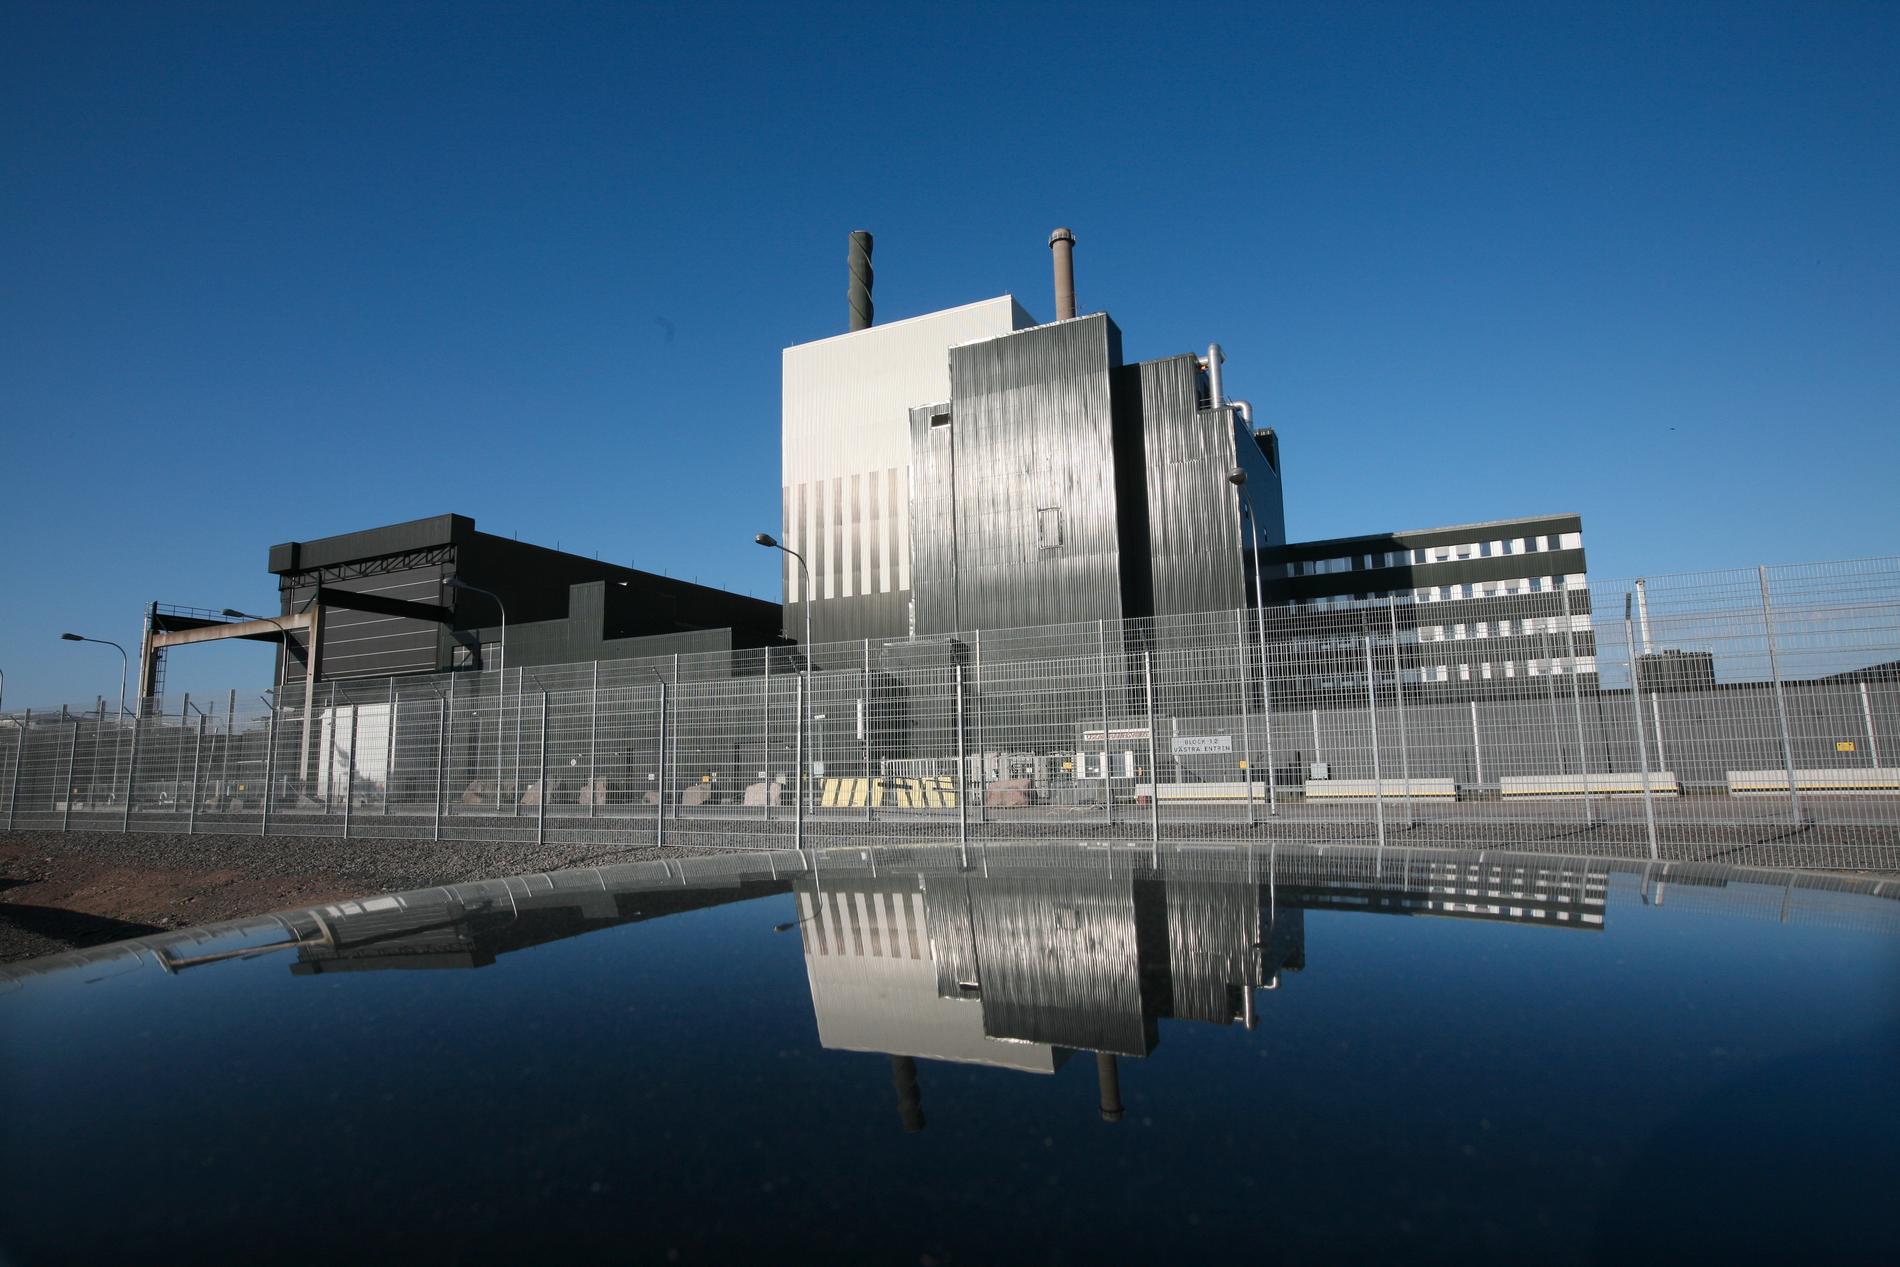 Förslaget om en ny forskningsreaktor vid Oskarshamns kärnkraftverk möts av reflexmässig kritik från bland annat MP, menar debattörerna.